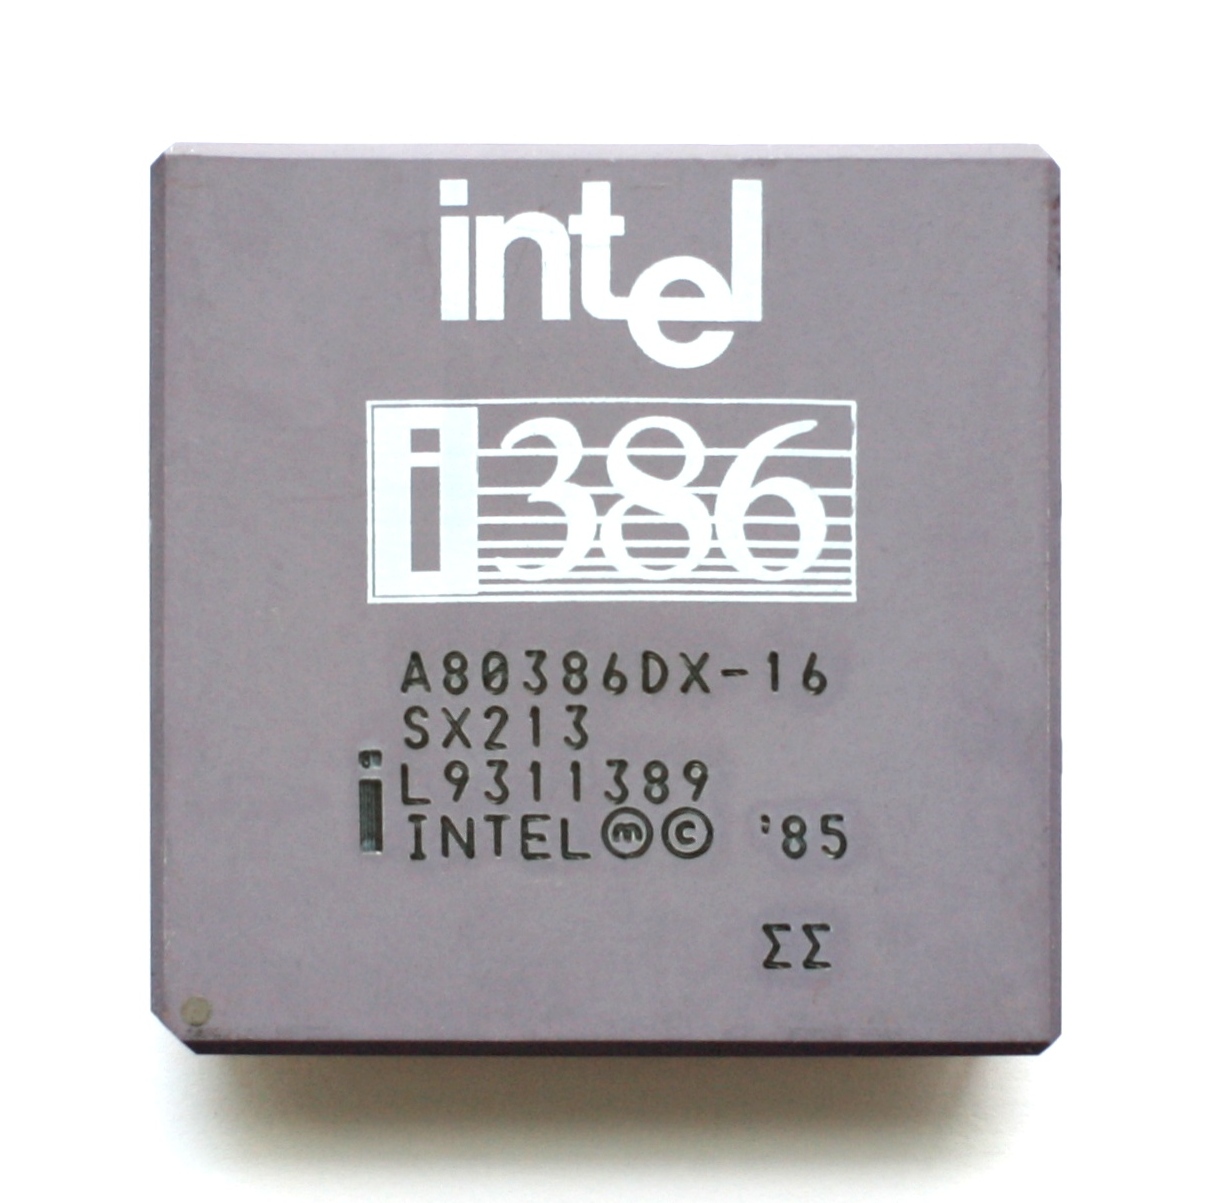 intel i386 - Tech History Today